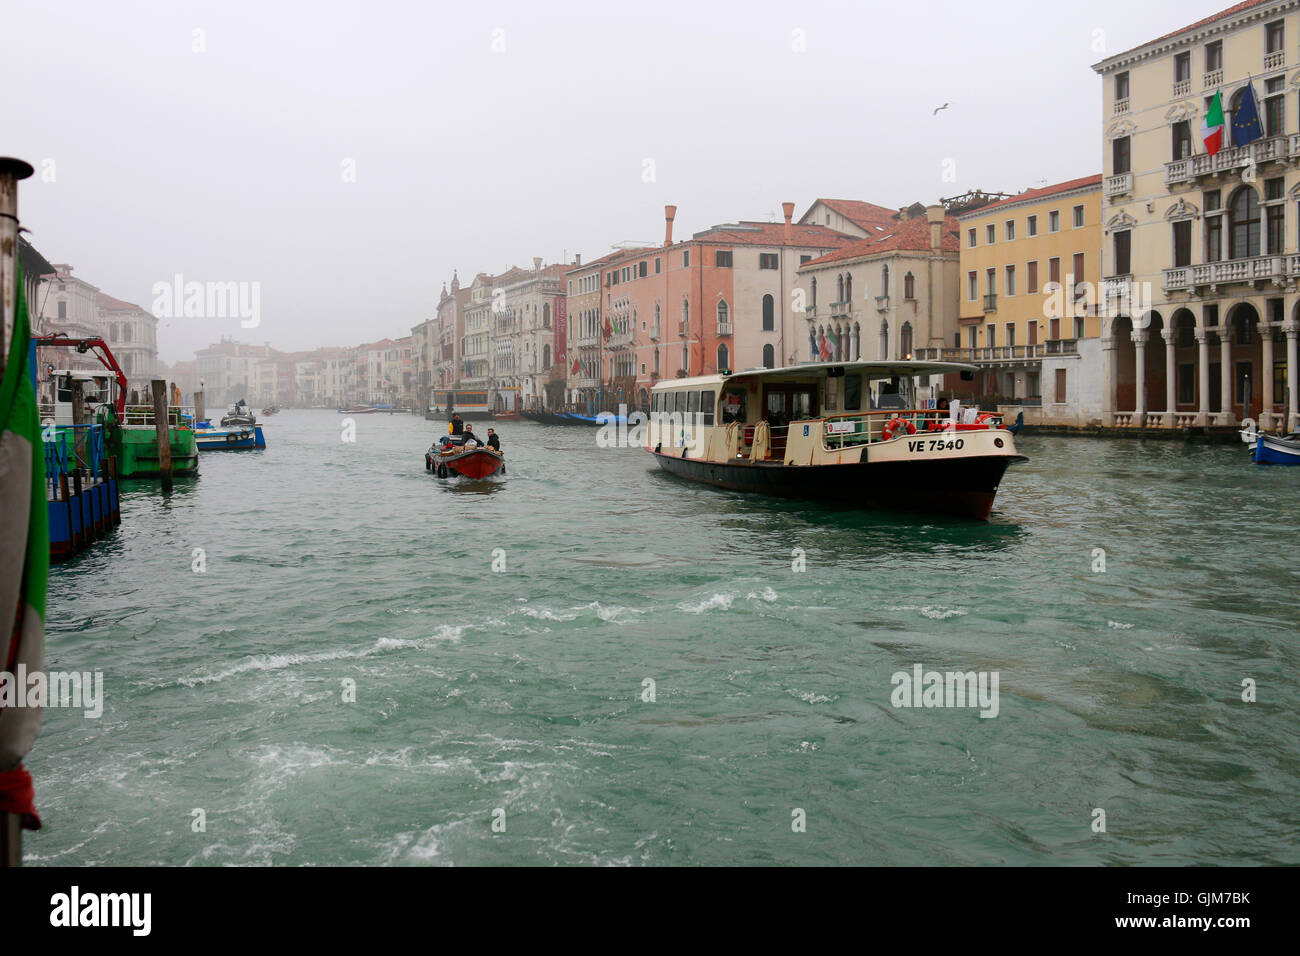 Impressionen: Vaporetto, Canal Grande, Venedig, Italien. Stockfoto